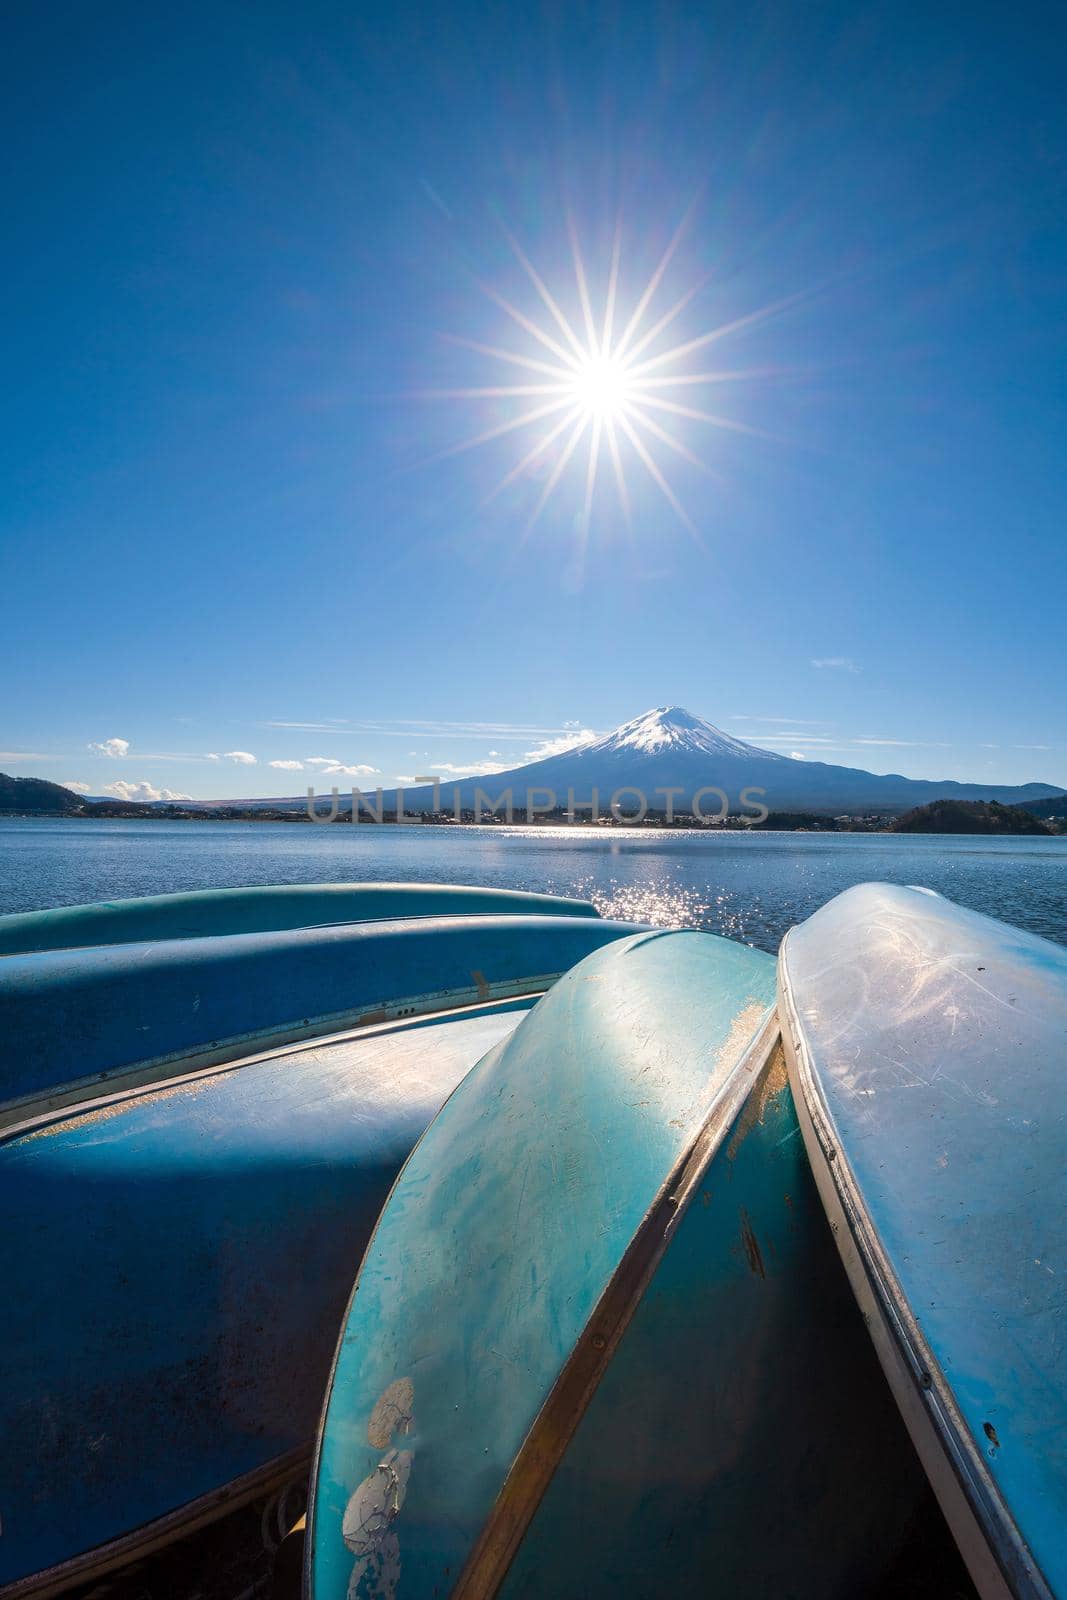 Sun star effect shot with Mountain Fuji and boats at Kawaguchiko lake Japan